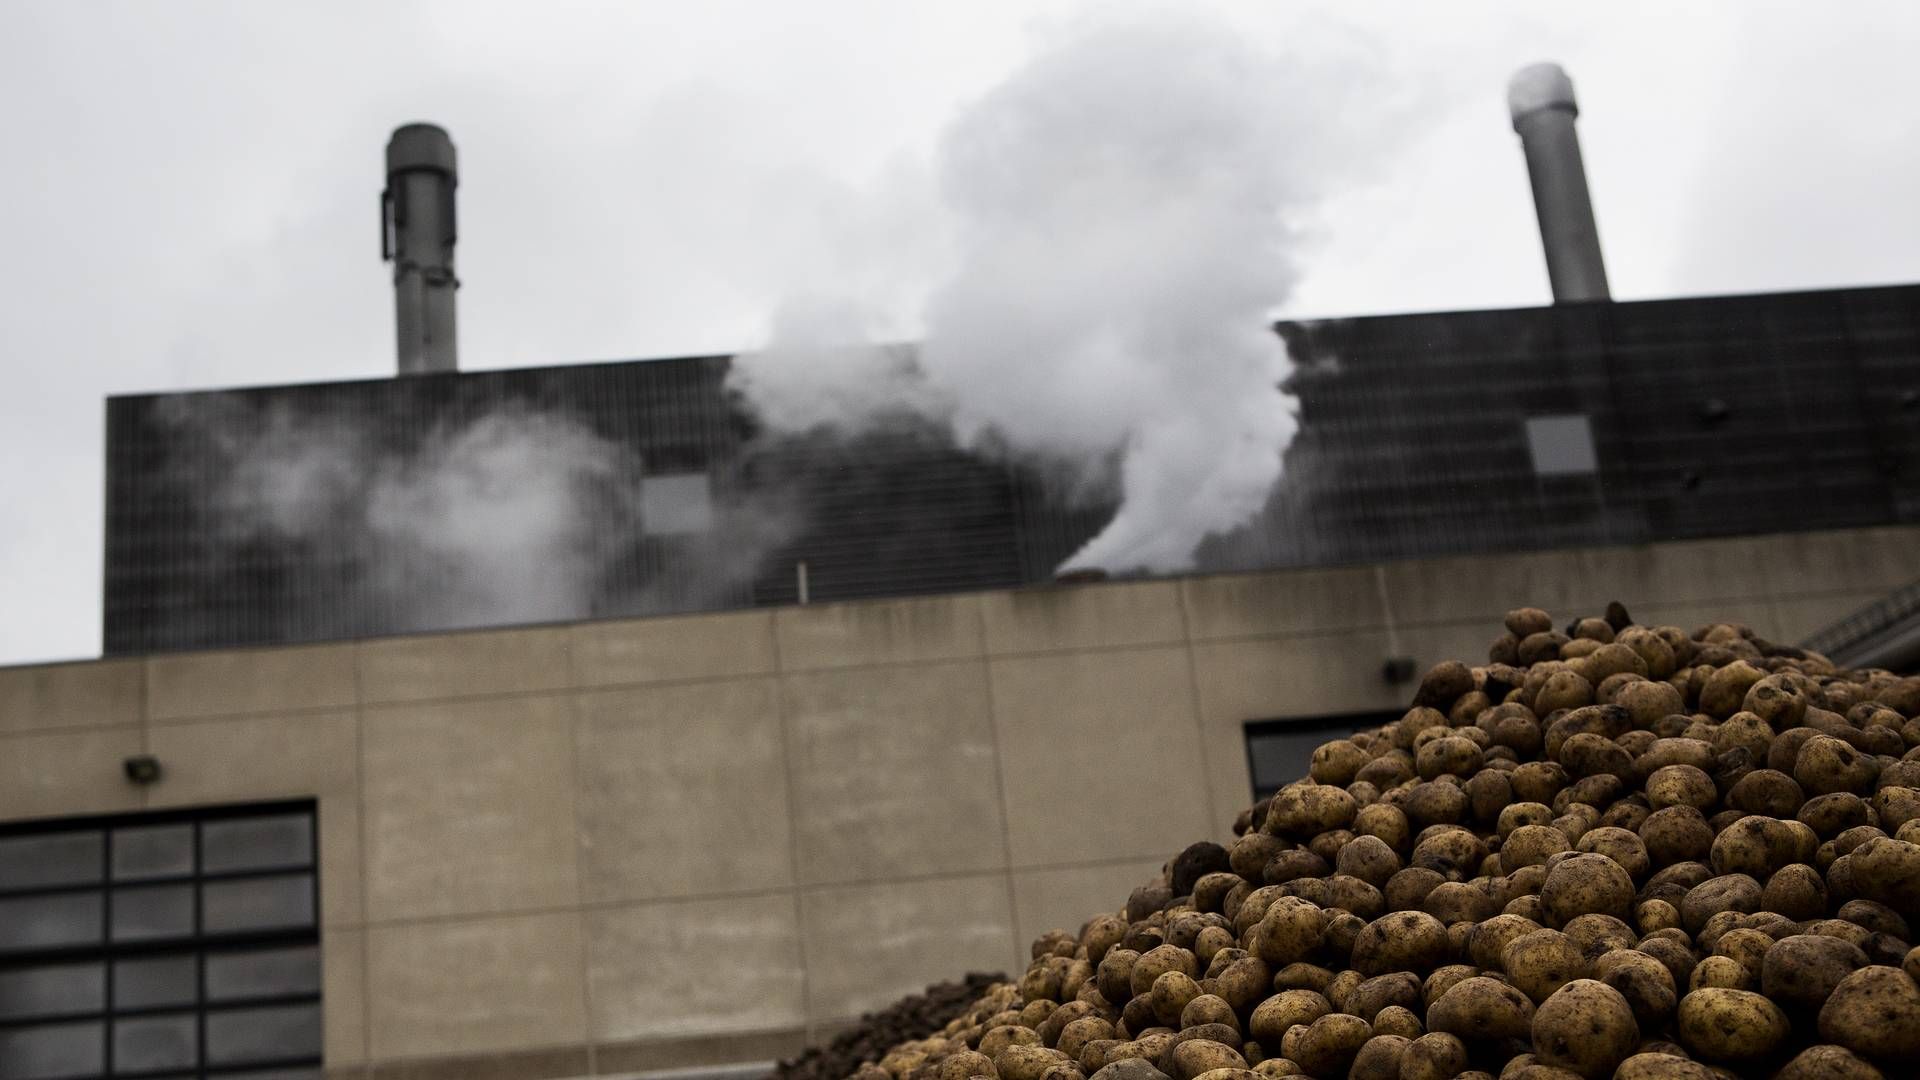 Fabrikken KMC i Brande producerer blandt andet kartoffelmel. Overskudsvarme fra en virksomhed som denne kan muligvis udnyttes til anden varme. | Foto: Janus Engel